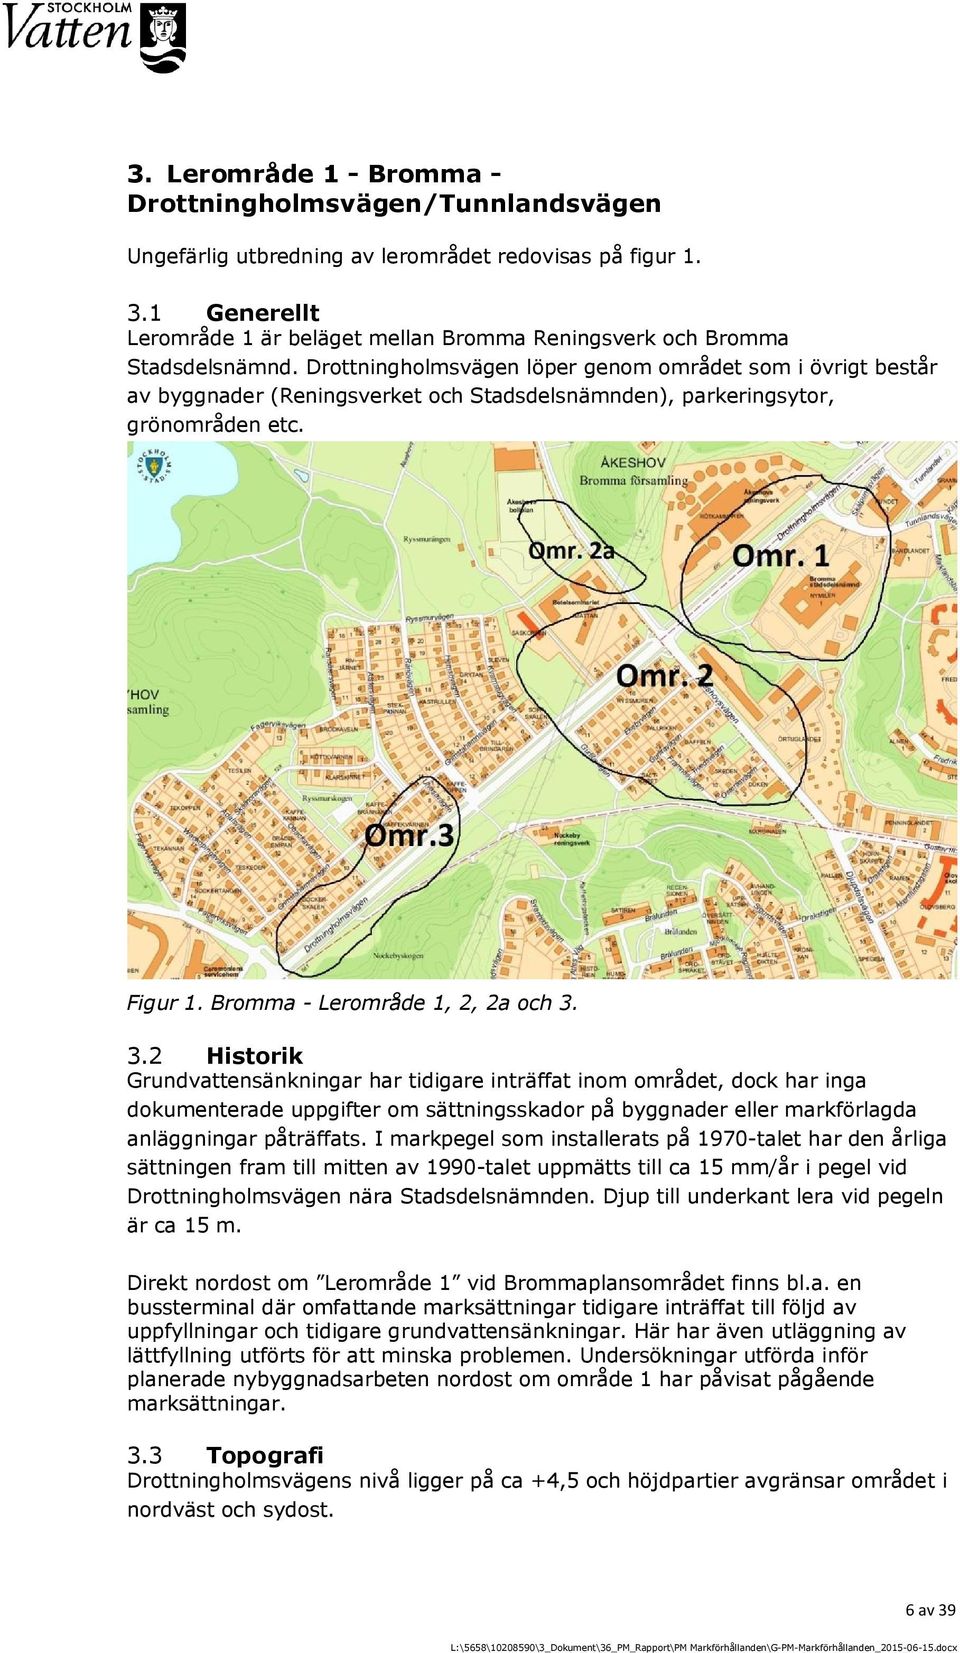 Drottningholmsvägen löper genom området som i övrigt består av byggnader (Reningsverket och Stadsdelsnämnden), parkeringsytor, grönområden etc. Figur 1. Bromma - Lerområde 1, 2, 2a och 3.